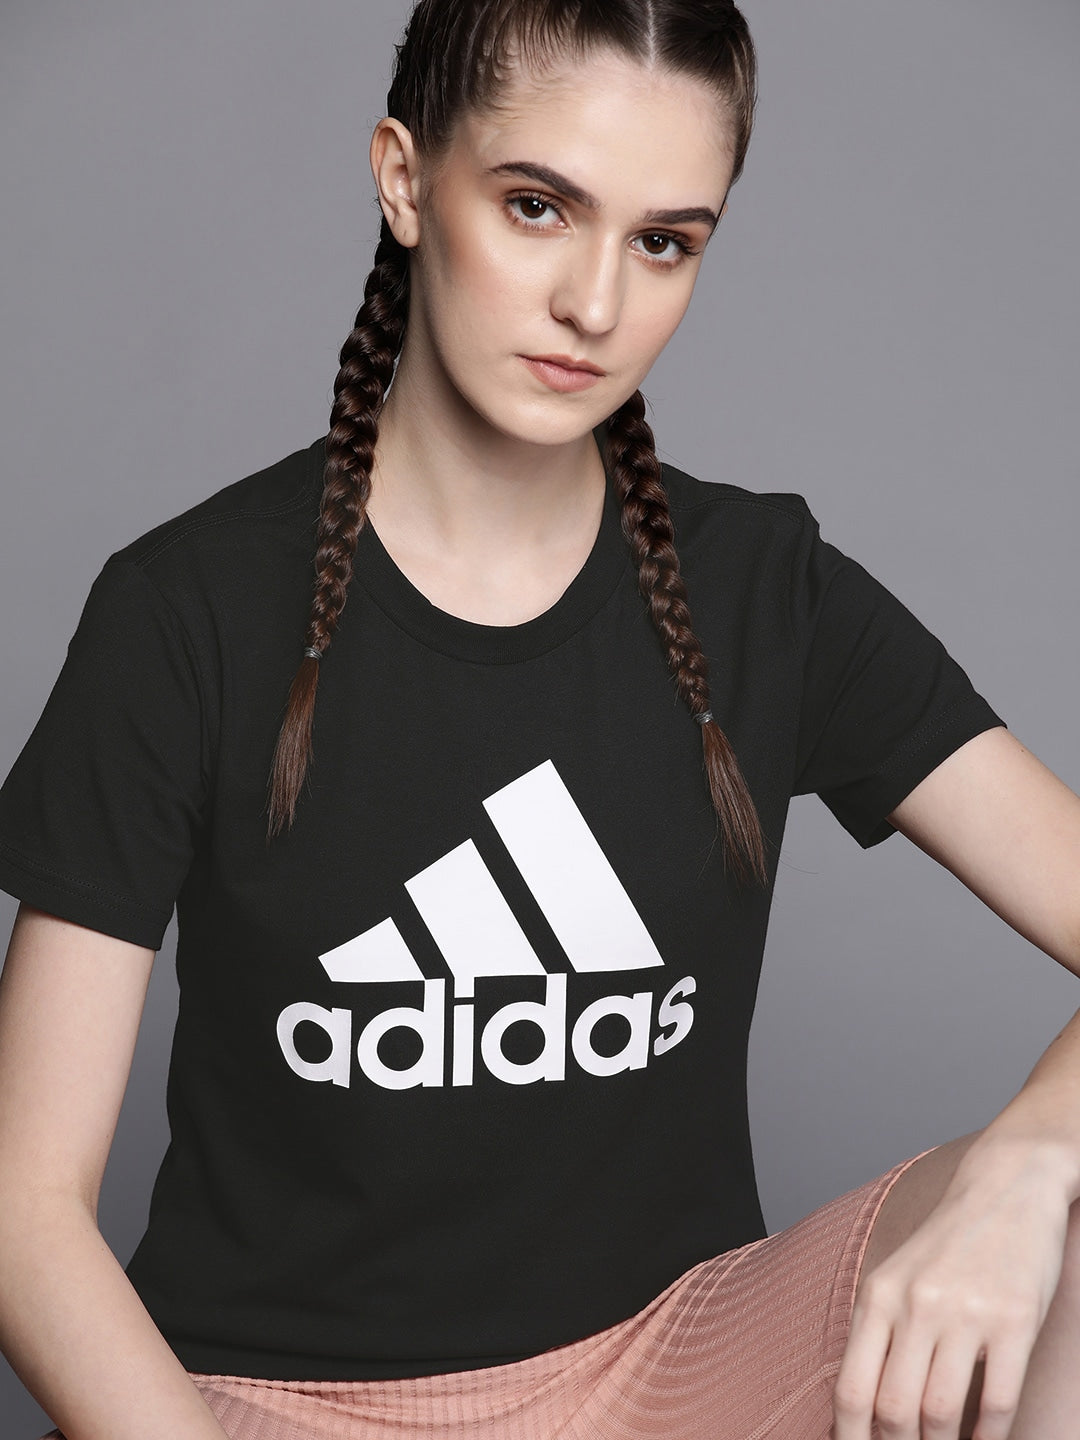 Adidas Women Black & White Brand Logo Printed T-shirt - Distacart